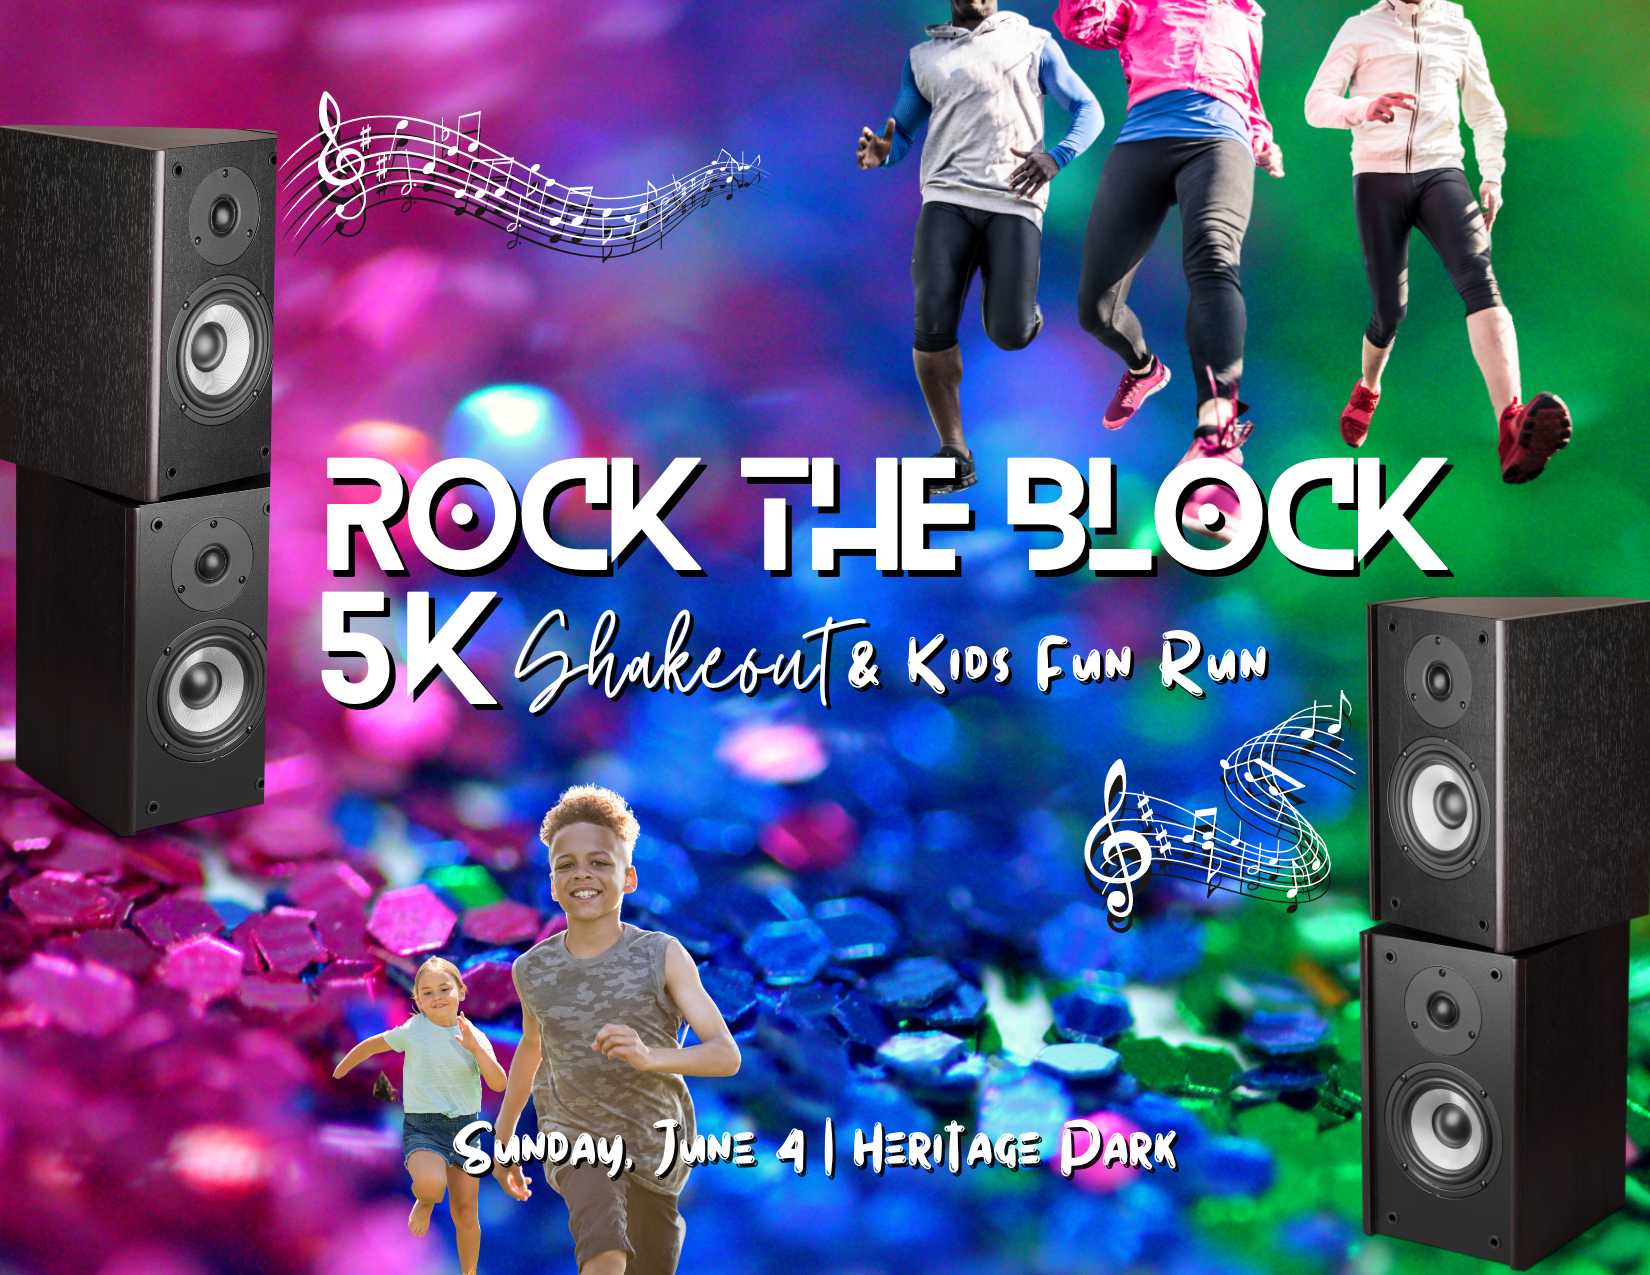 Rock the Block 5k Shakeout & Kids Fun Run